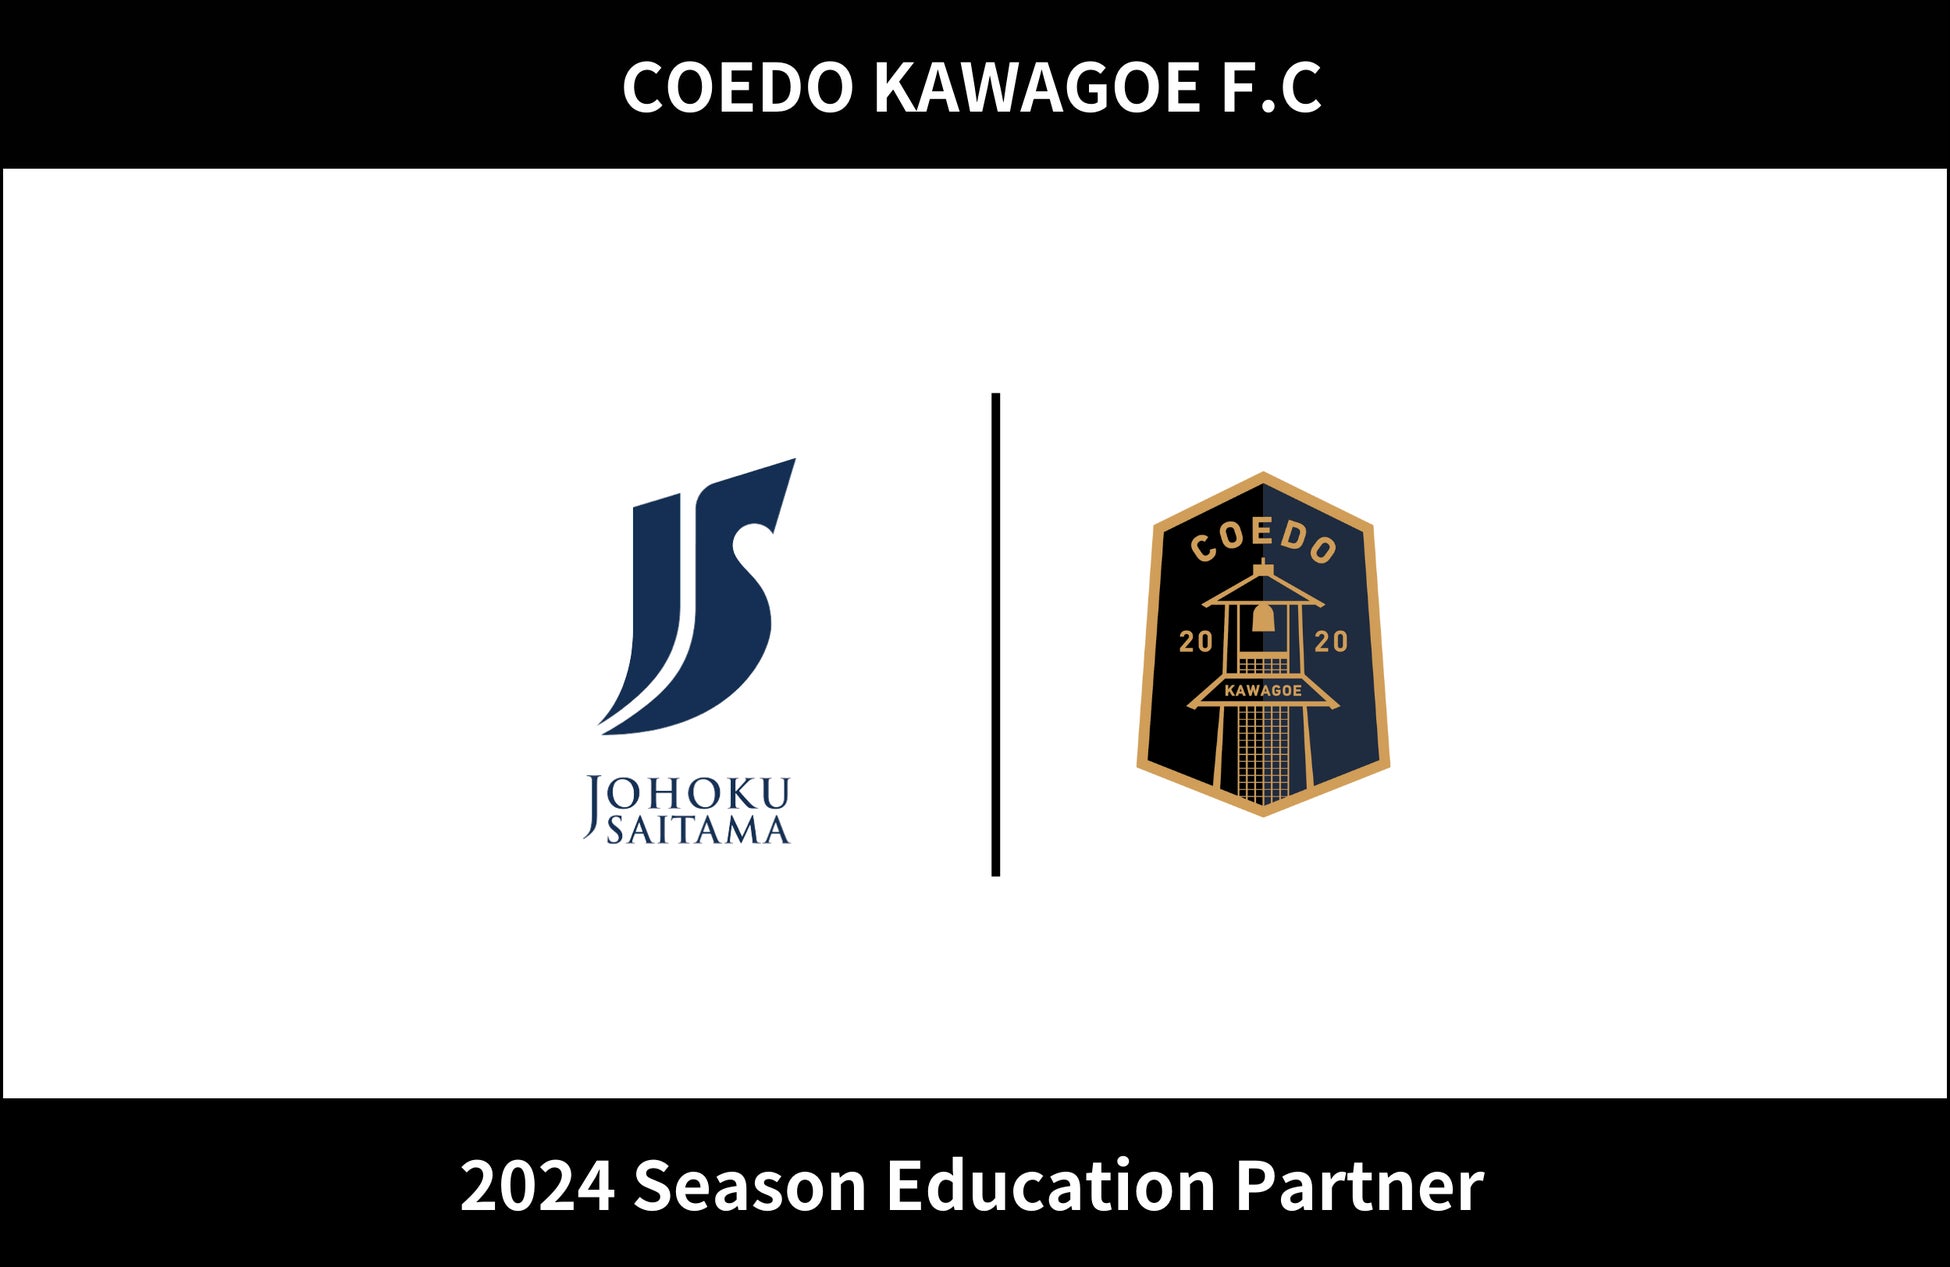 埼玉県川越市からJリーグを目指す「COEDO KAWAGOE F.C」、城北埼玉中学・高等学校と2024シーズンのエデュケーションパートナー契約を更新